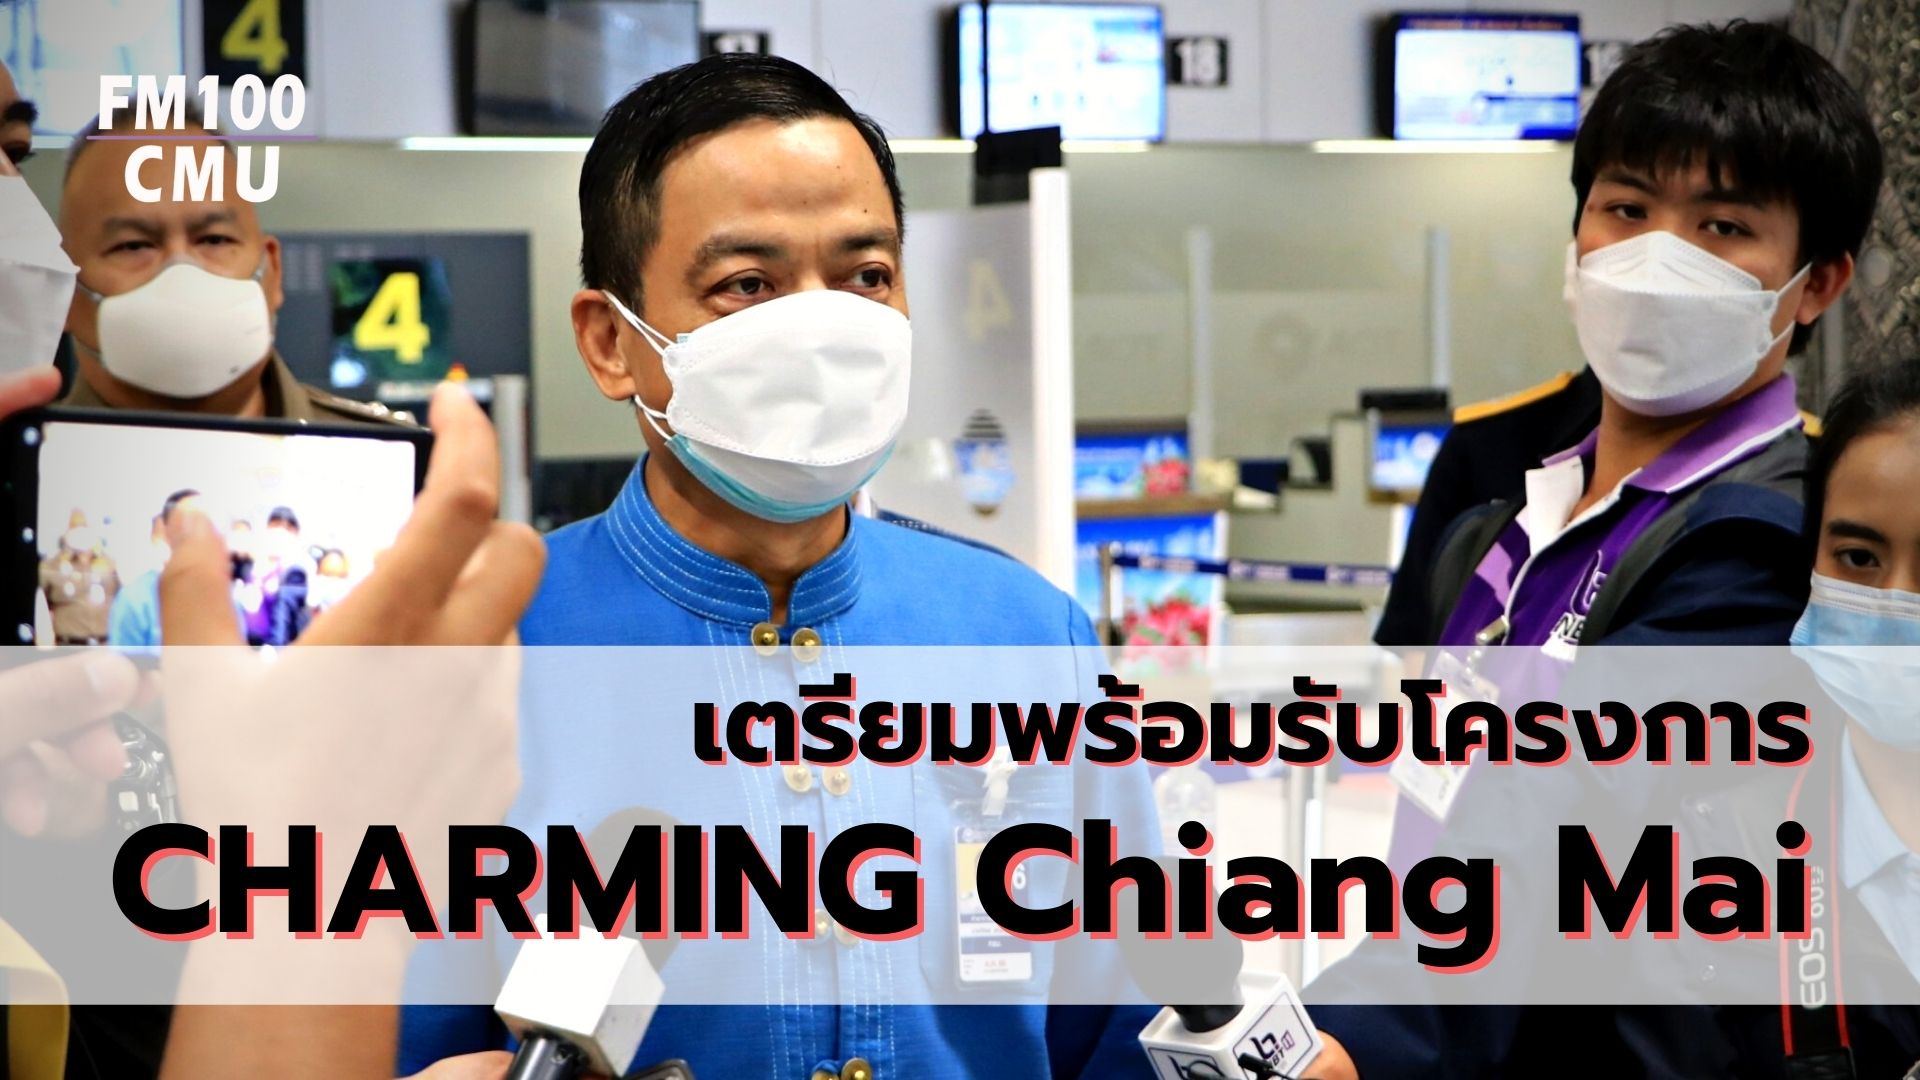 เตรียมพร้อมรับโครงการ CHARMING Chiang Mai